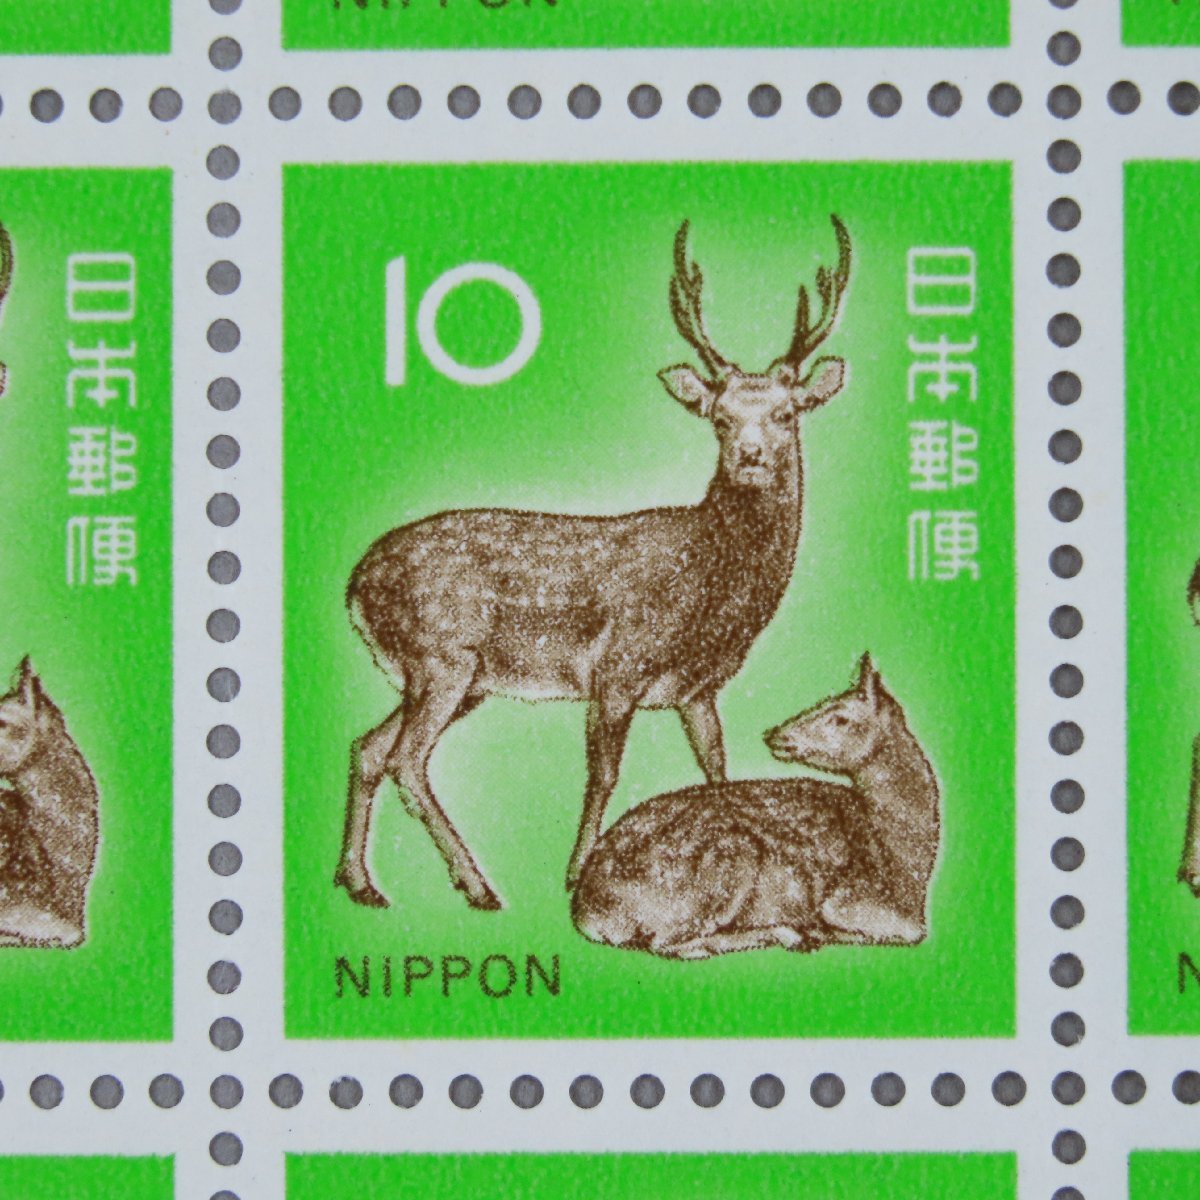 【切手0546】日本切手 しか シカ 鹿 10円100面1シート